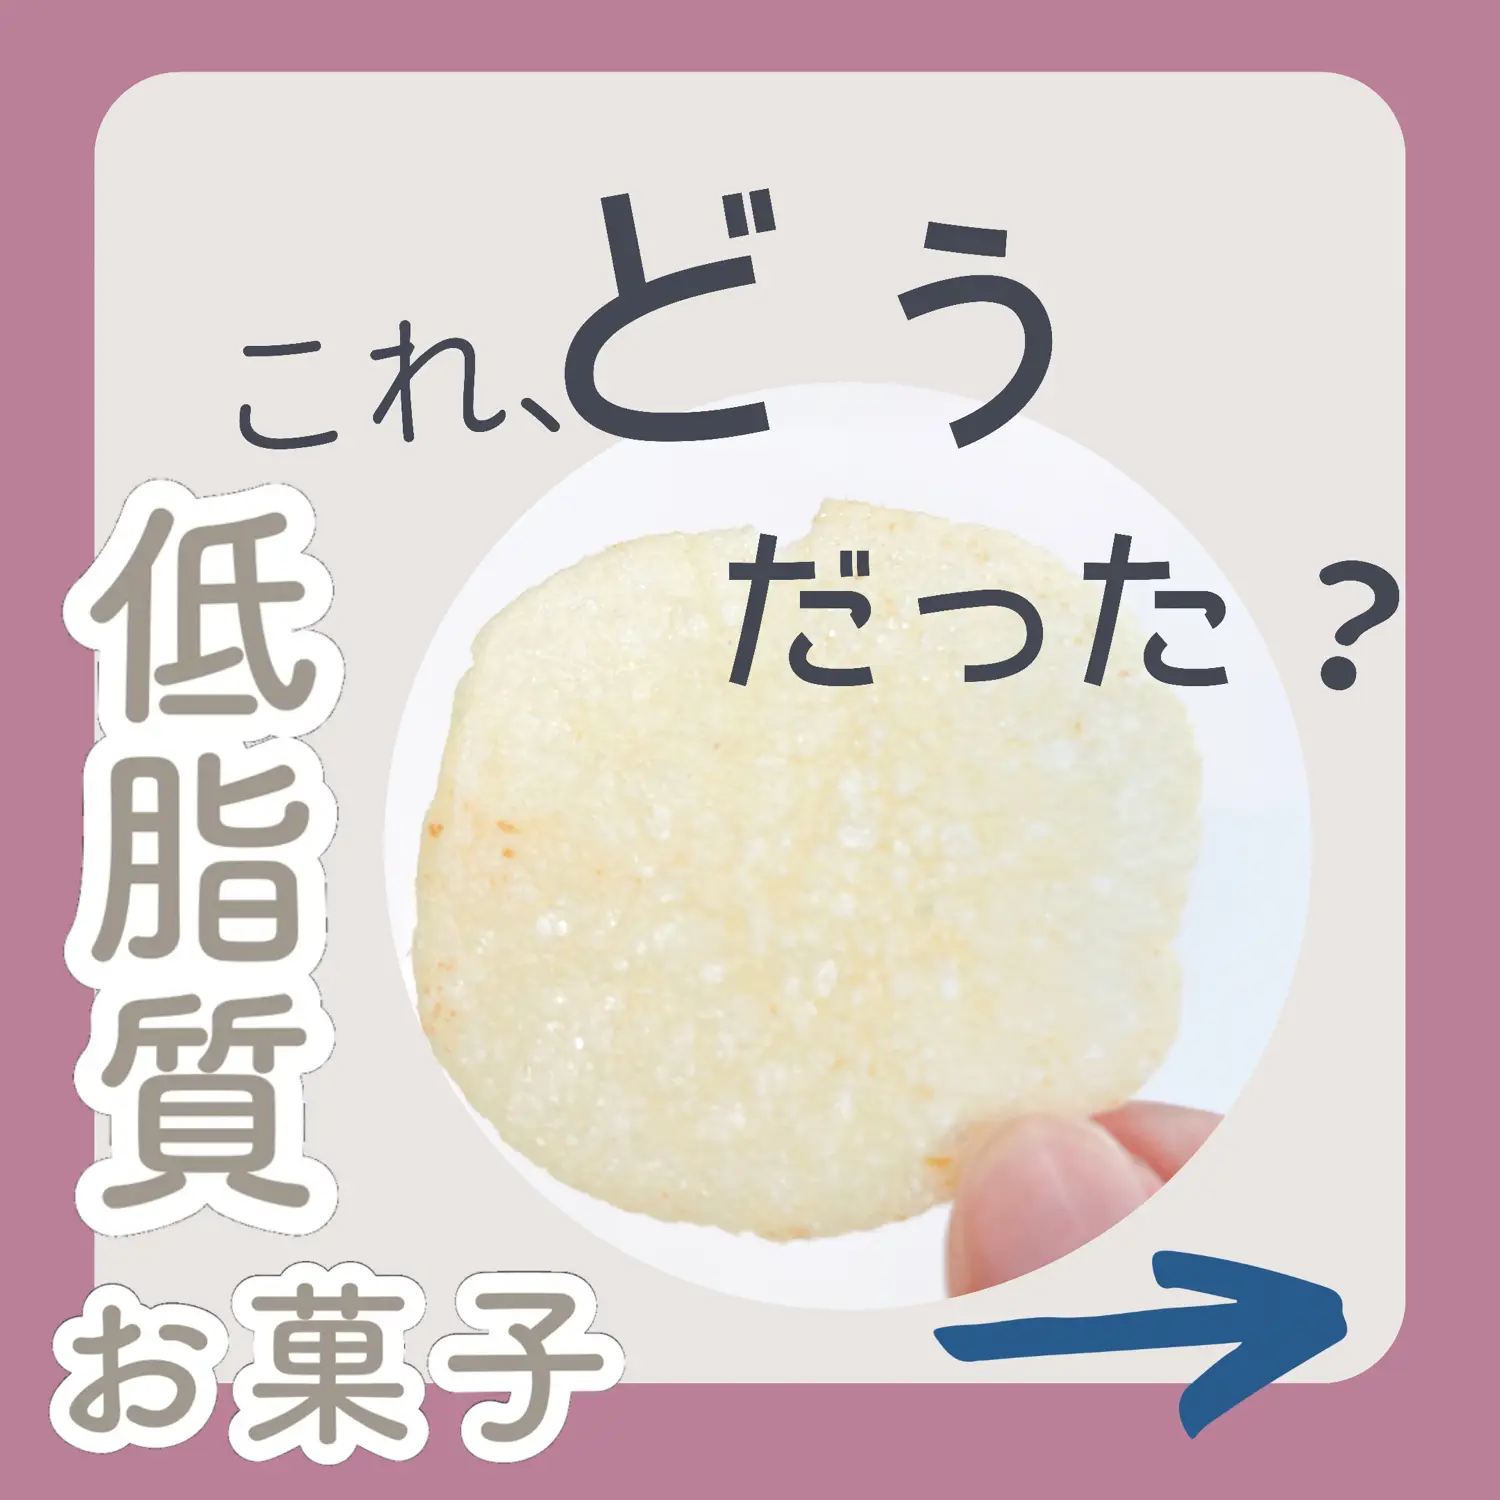 サンフードスーパーフーズ - Lemon8検索